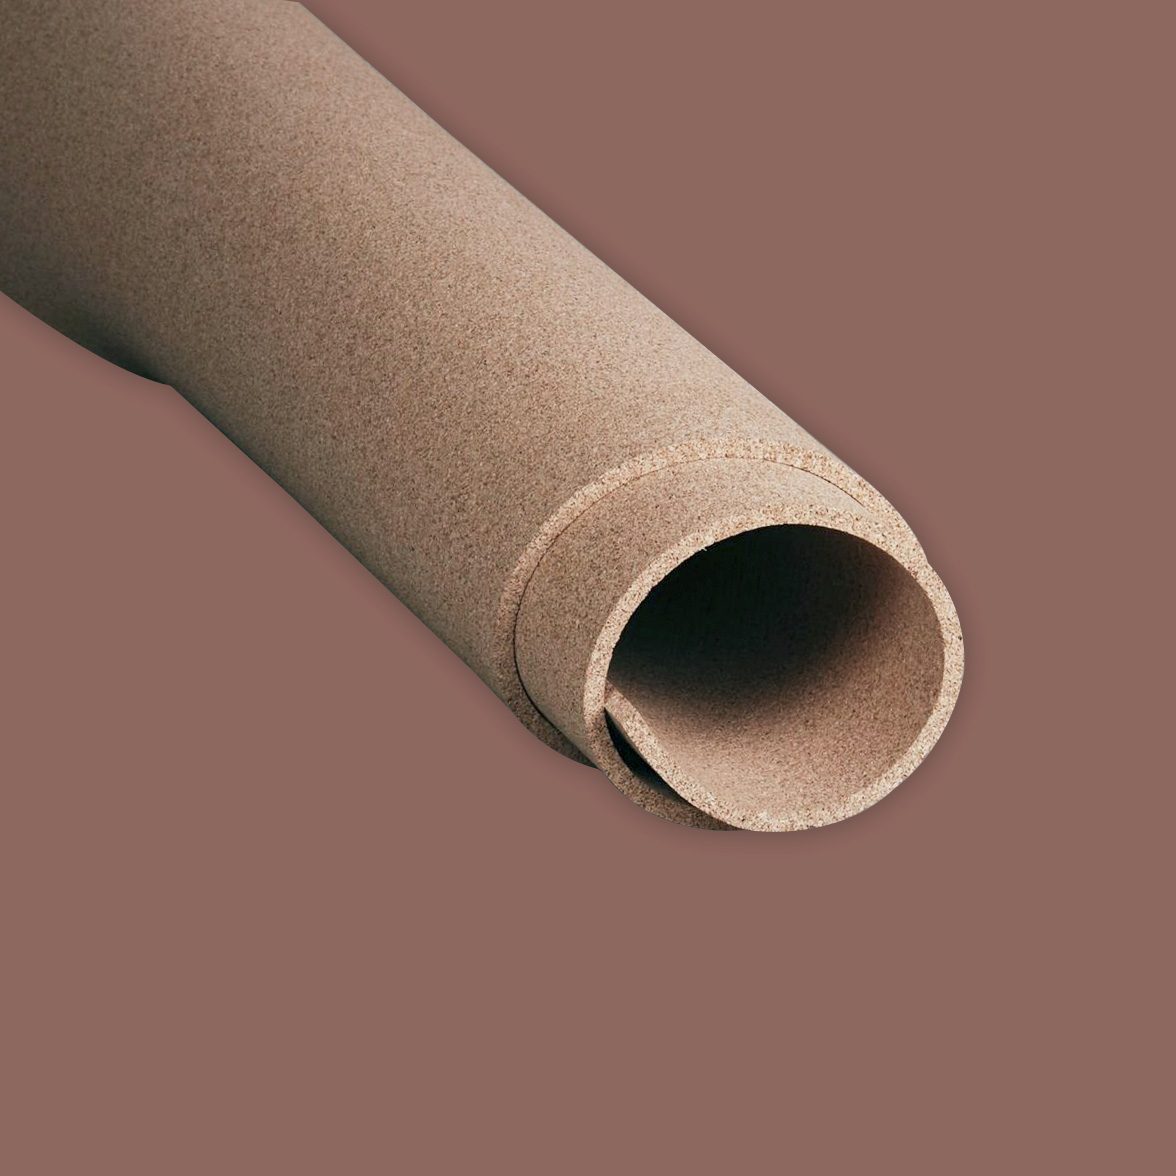 2K Bargain 8 x 2mm Thick x 1000mm Long x 500mm Wide High Quality Cork Roll Sheet 